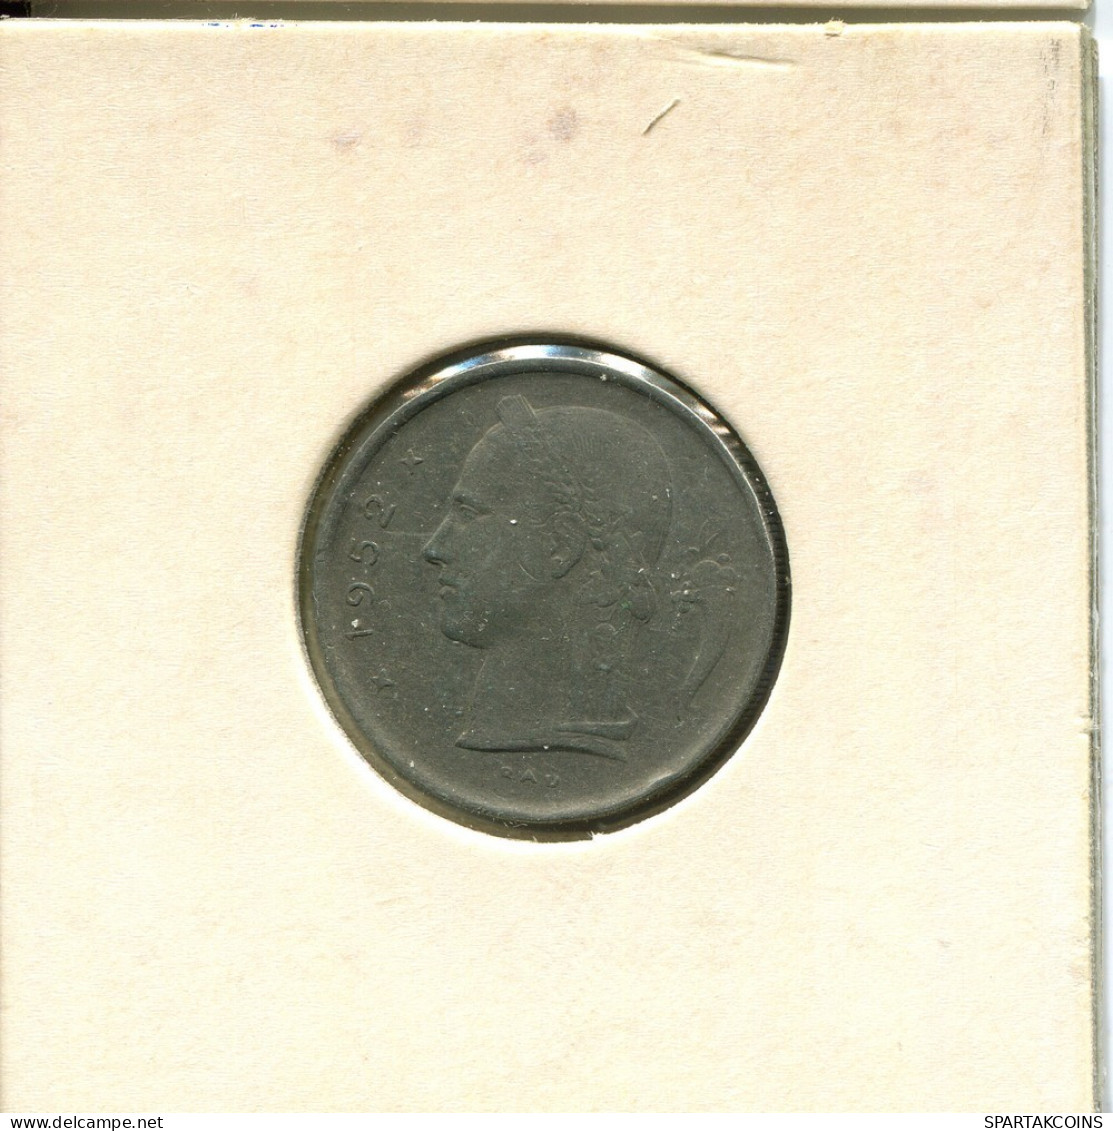 1 FRANC 1952 DUTCH Text BÉLGICA BELGIUM Moneda #AT997.E.A - 1 Franc